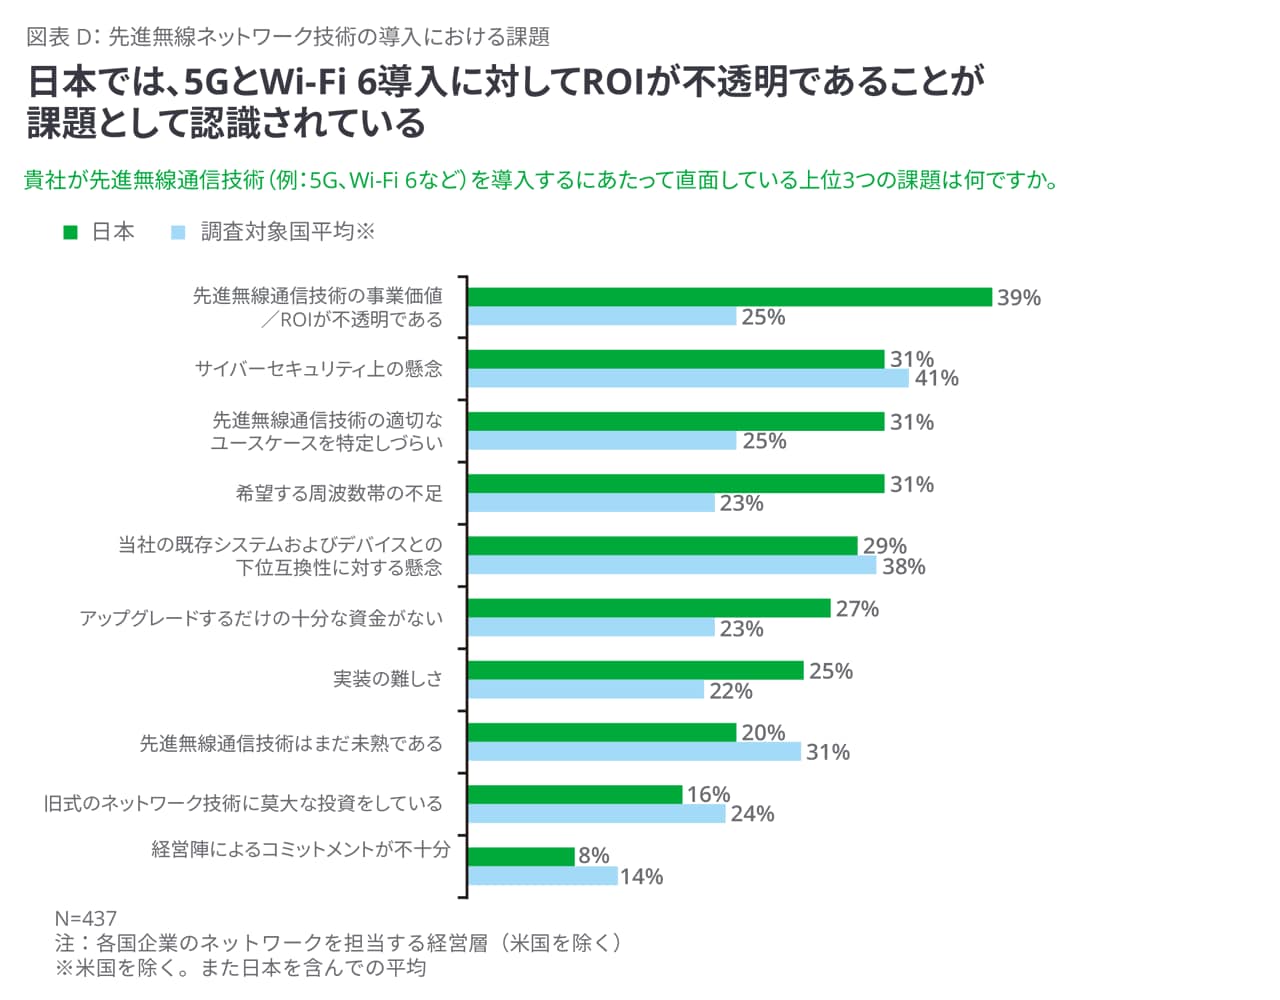 日本では5GやWi-fi 6の導入のROI効果が不透明であることが課題として認識されている